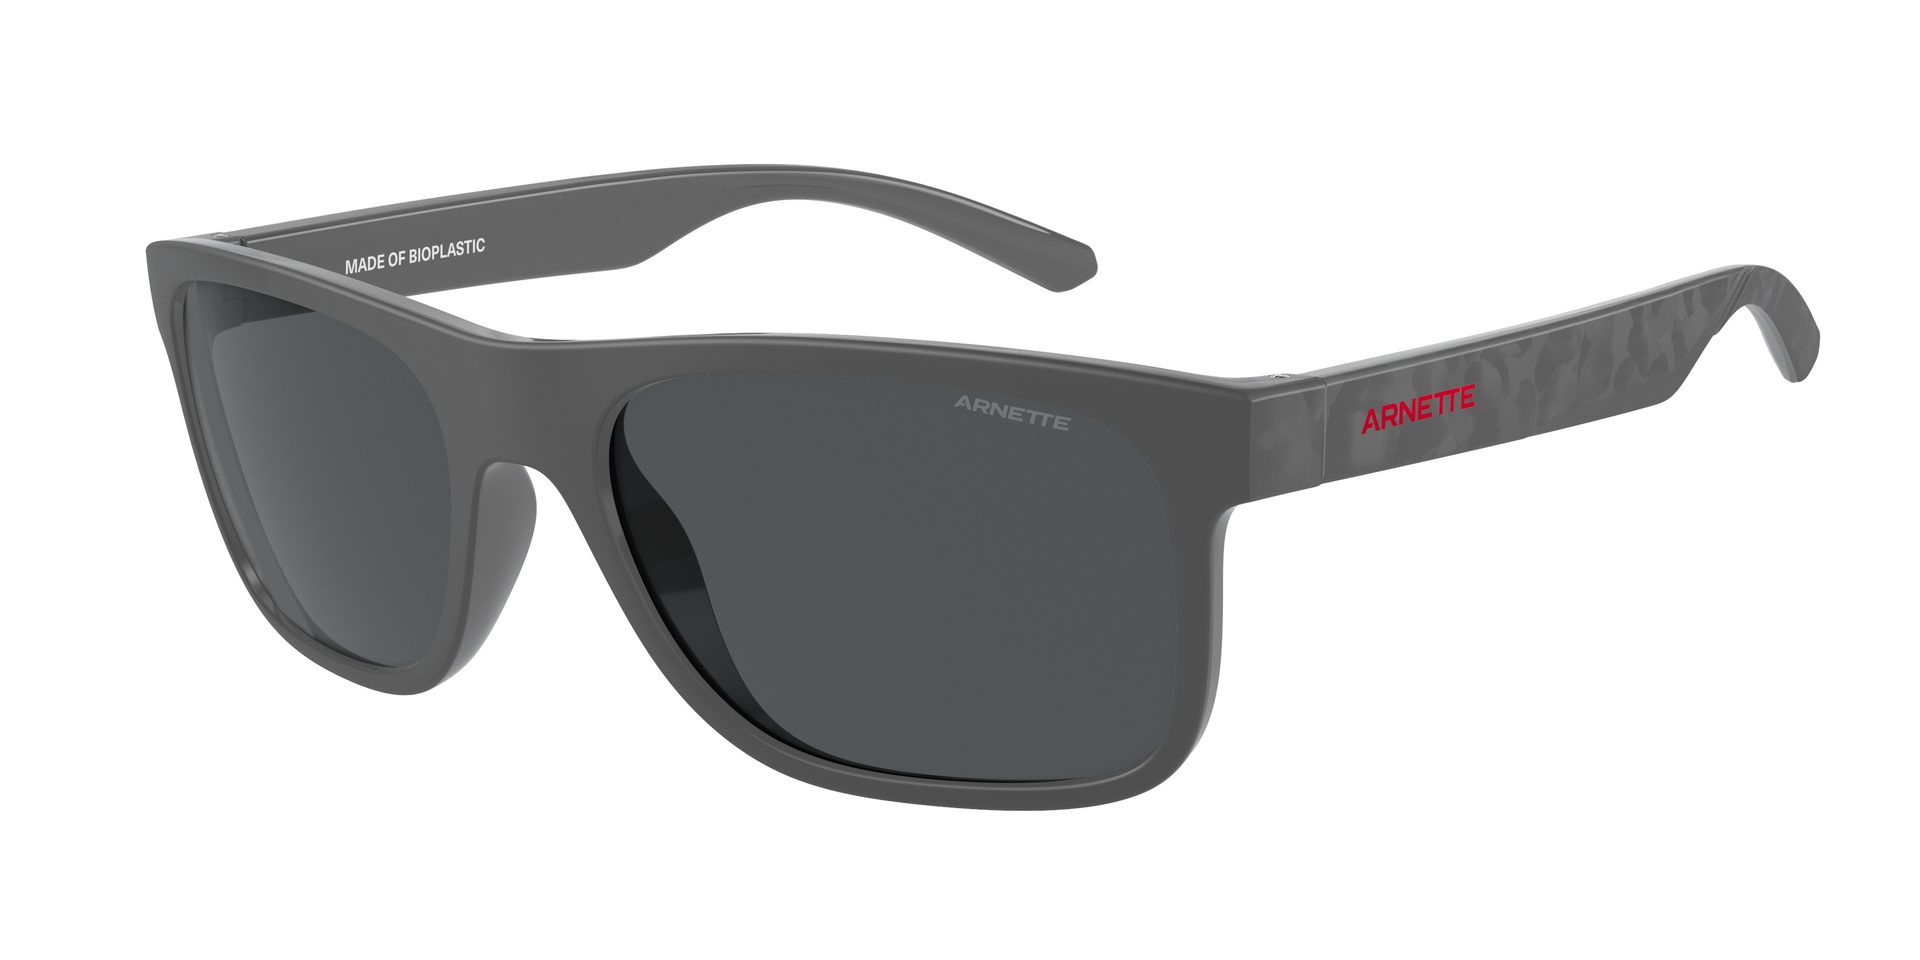 Das Bild zeigt die Sonnenbrille AN4341 287087 von der Marke Arnette in schwarz/grau.